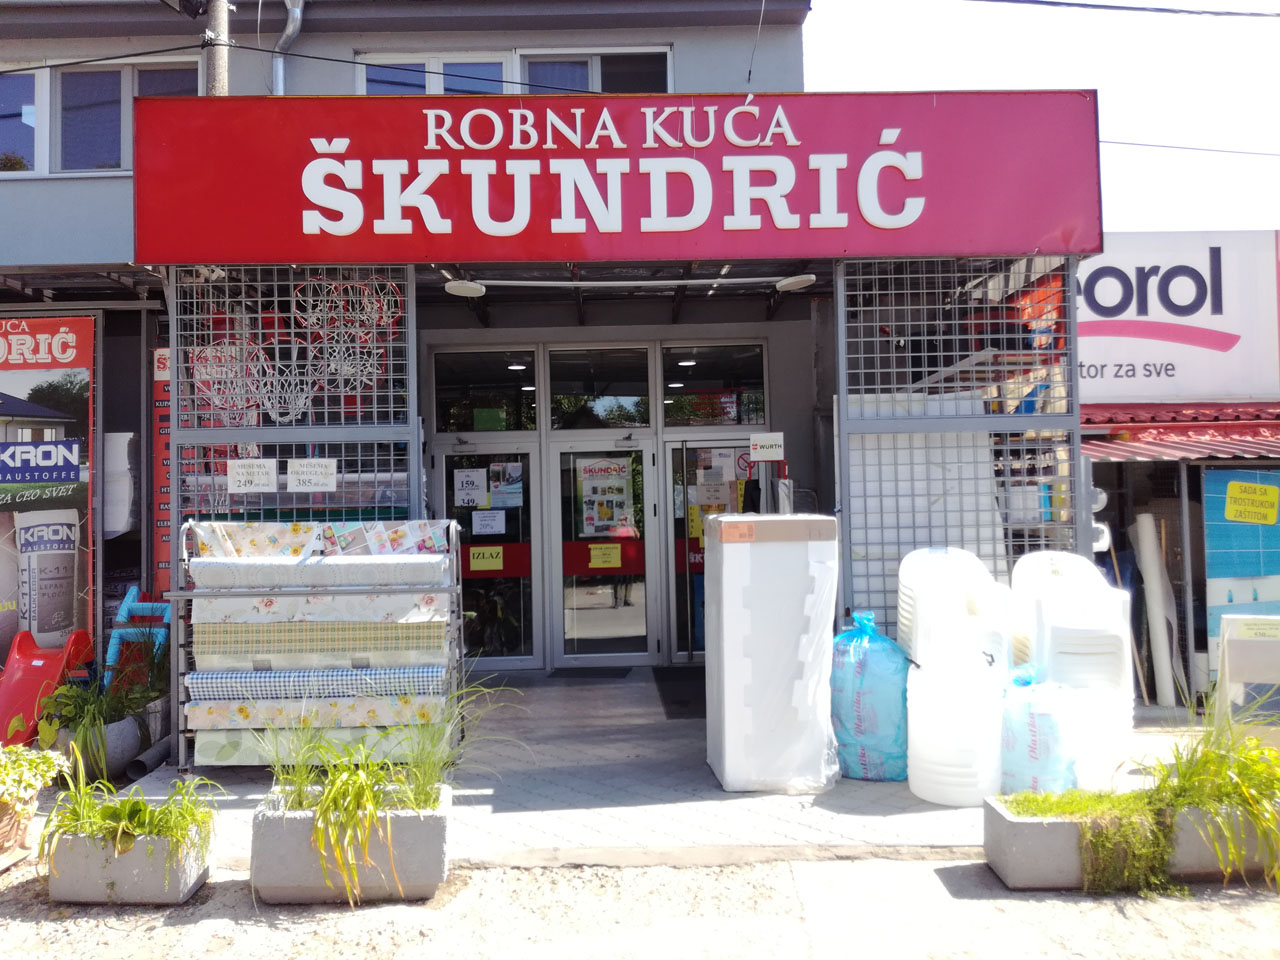 ROBNA KUĆA ŠKUNDRIĆ Prodavnice, trafike, robne kuće Beograd - Slika 1